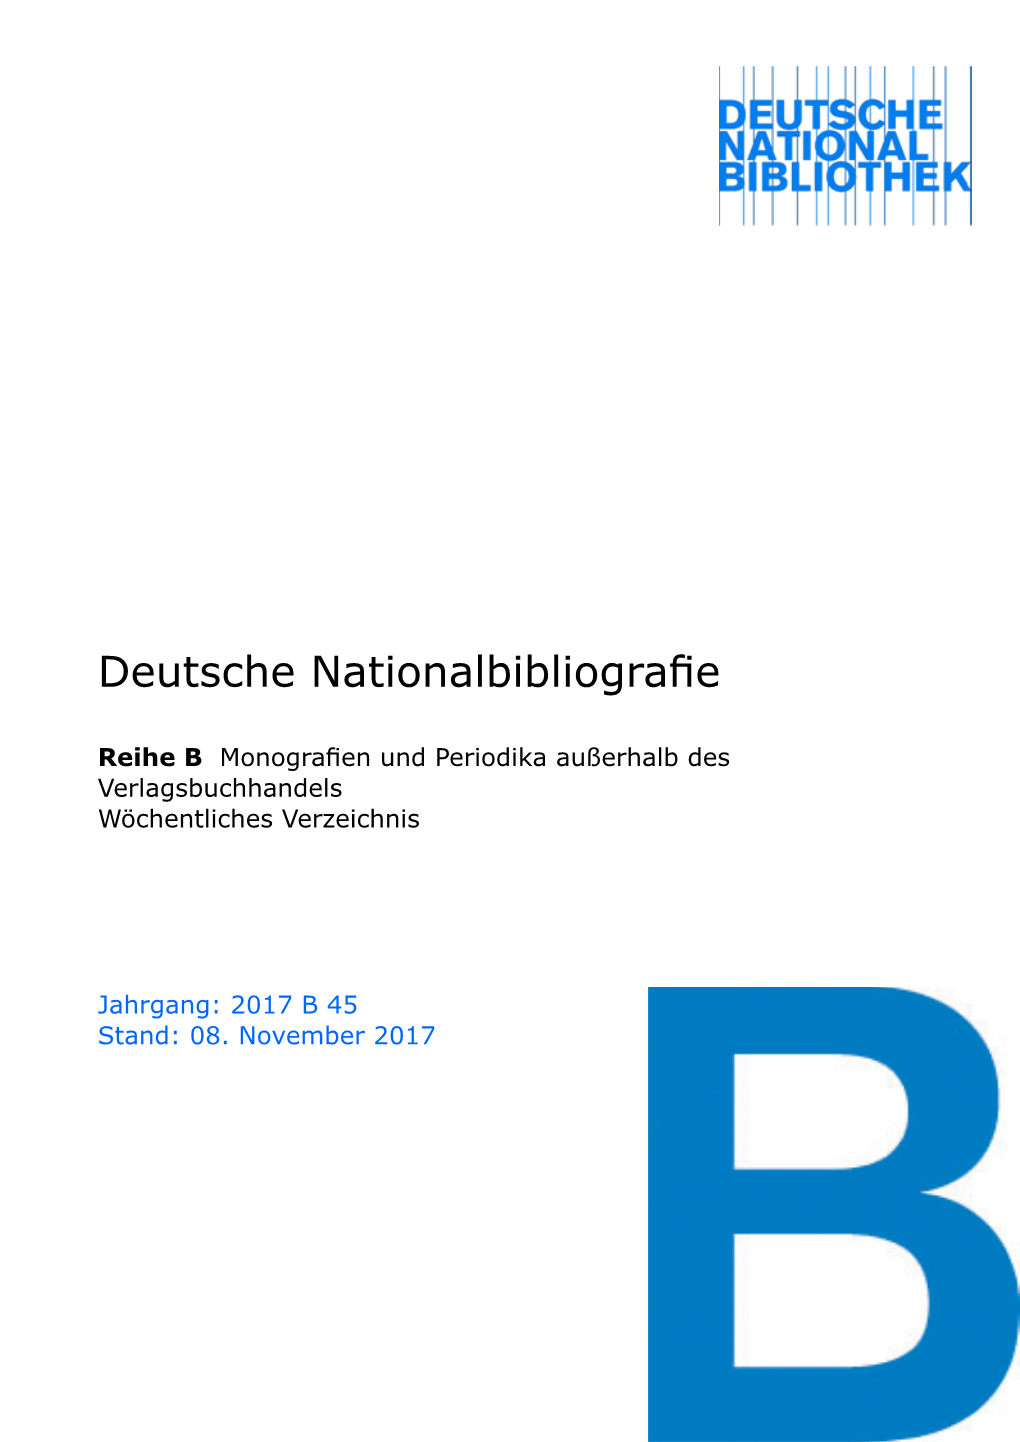 Deutsche Nationalbibliografie 2017 B 45